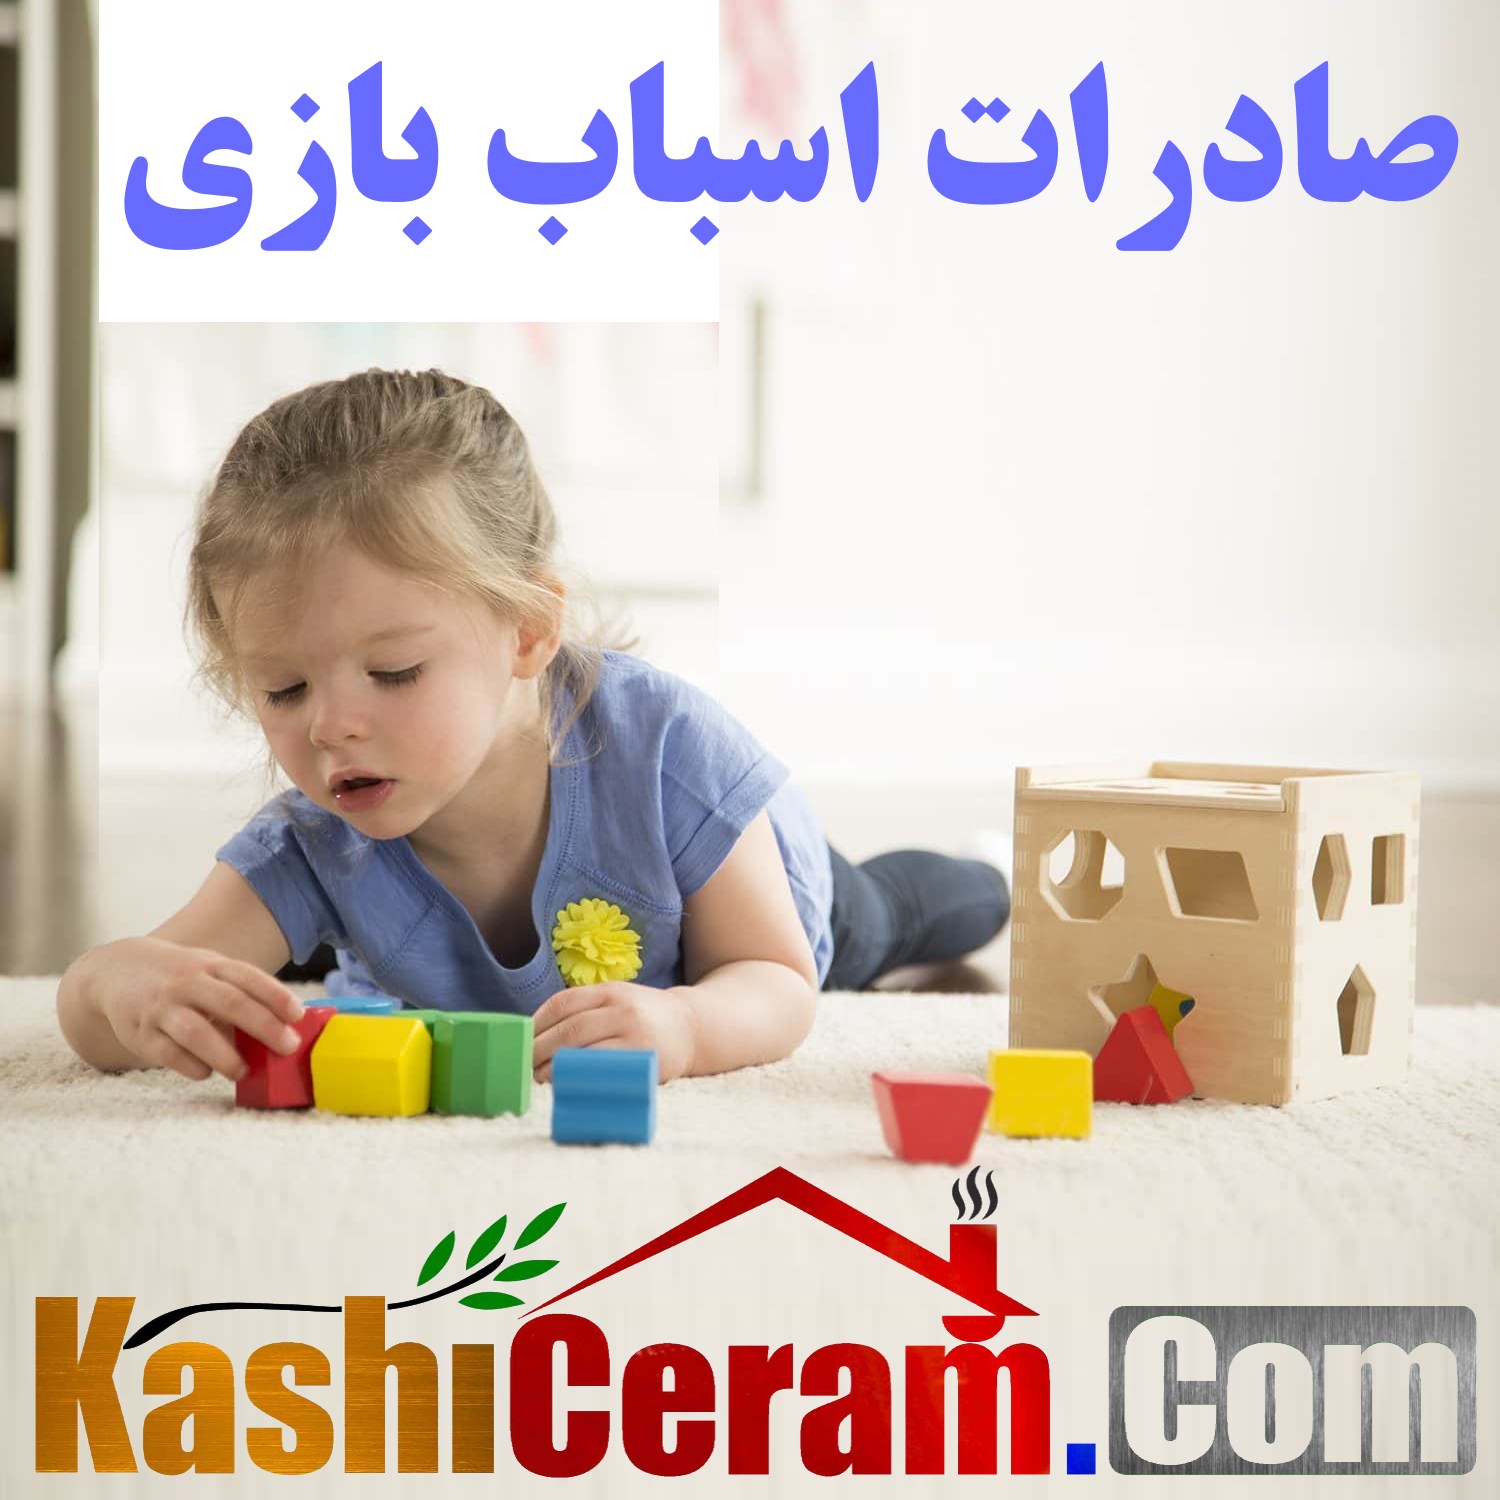 صادرات اسباب بازی ایران | Iran Toys Export | تولید لعبة اللعبة ایرانية